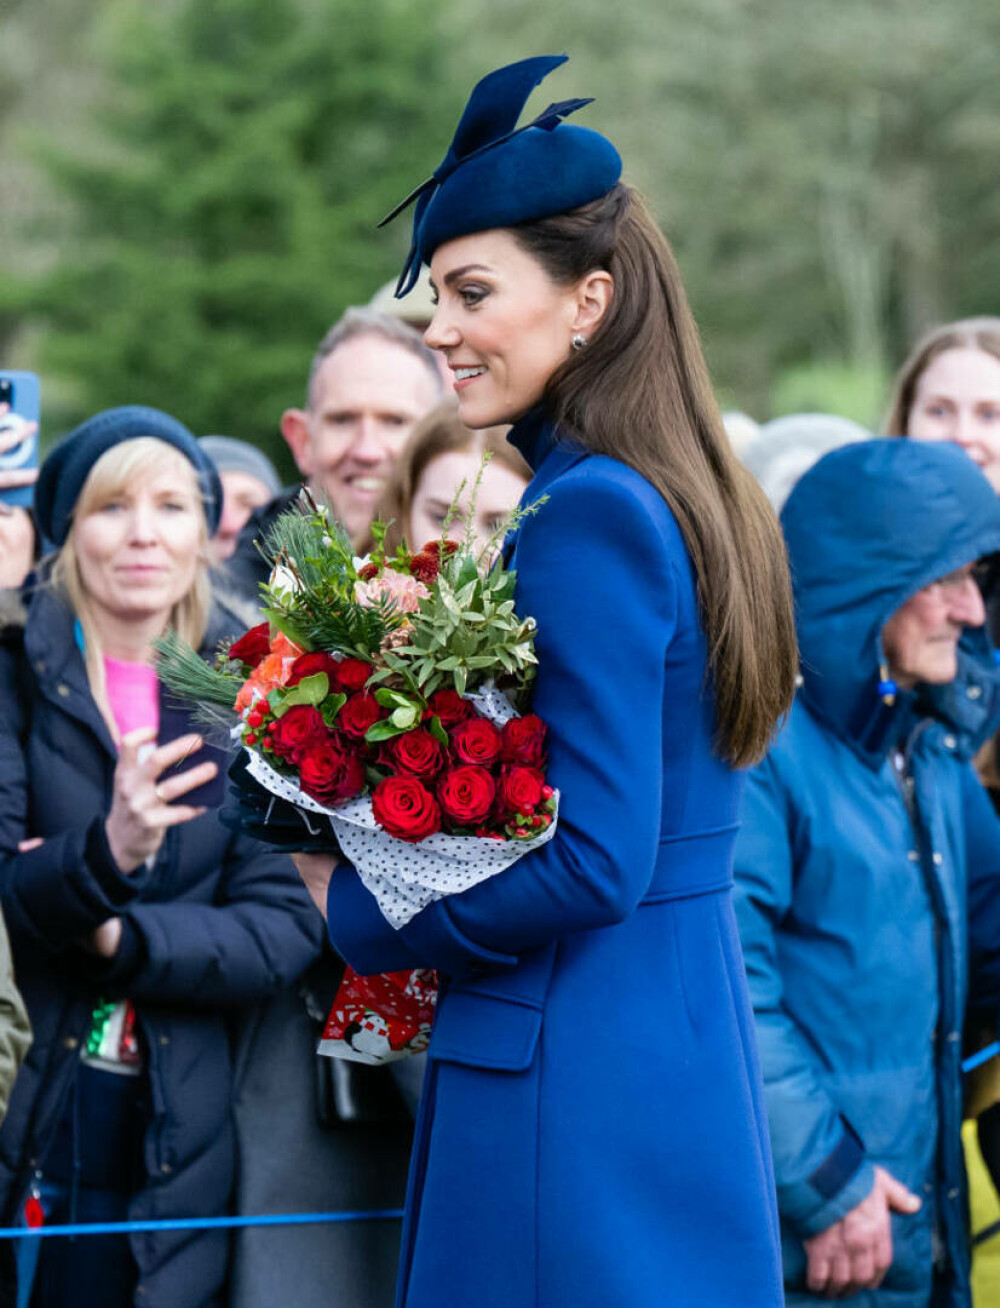 Ultima apariție publică a prințesei de Wales, Kate Middleton, înainte de operația abdominală. Cum s-a prezentat | FOTO - Imaginea 17